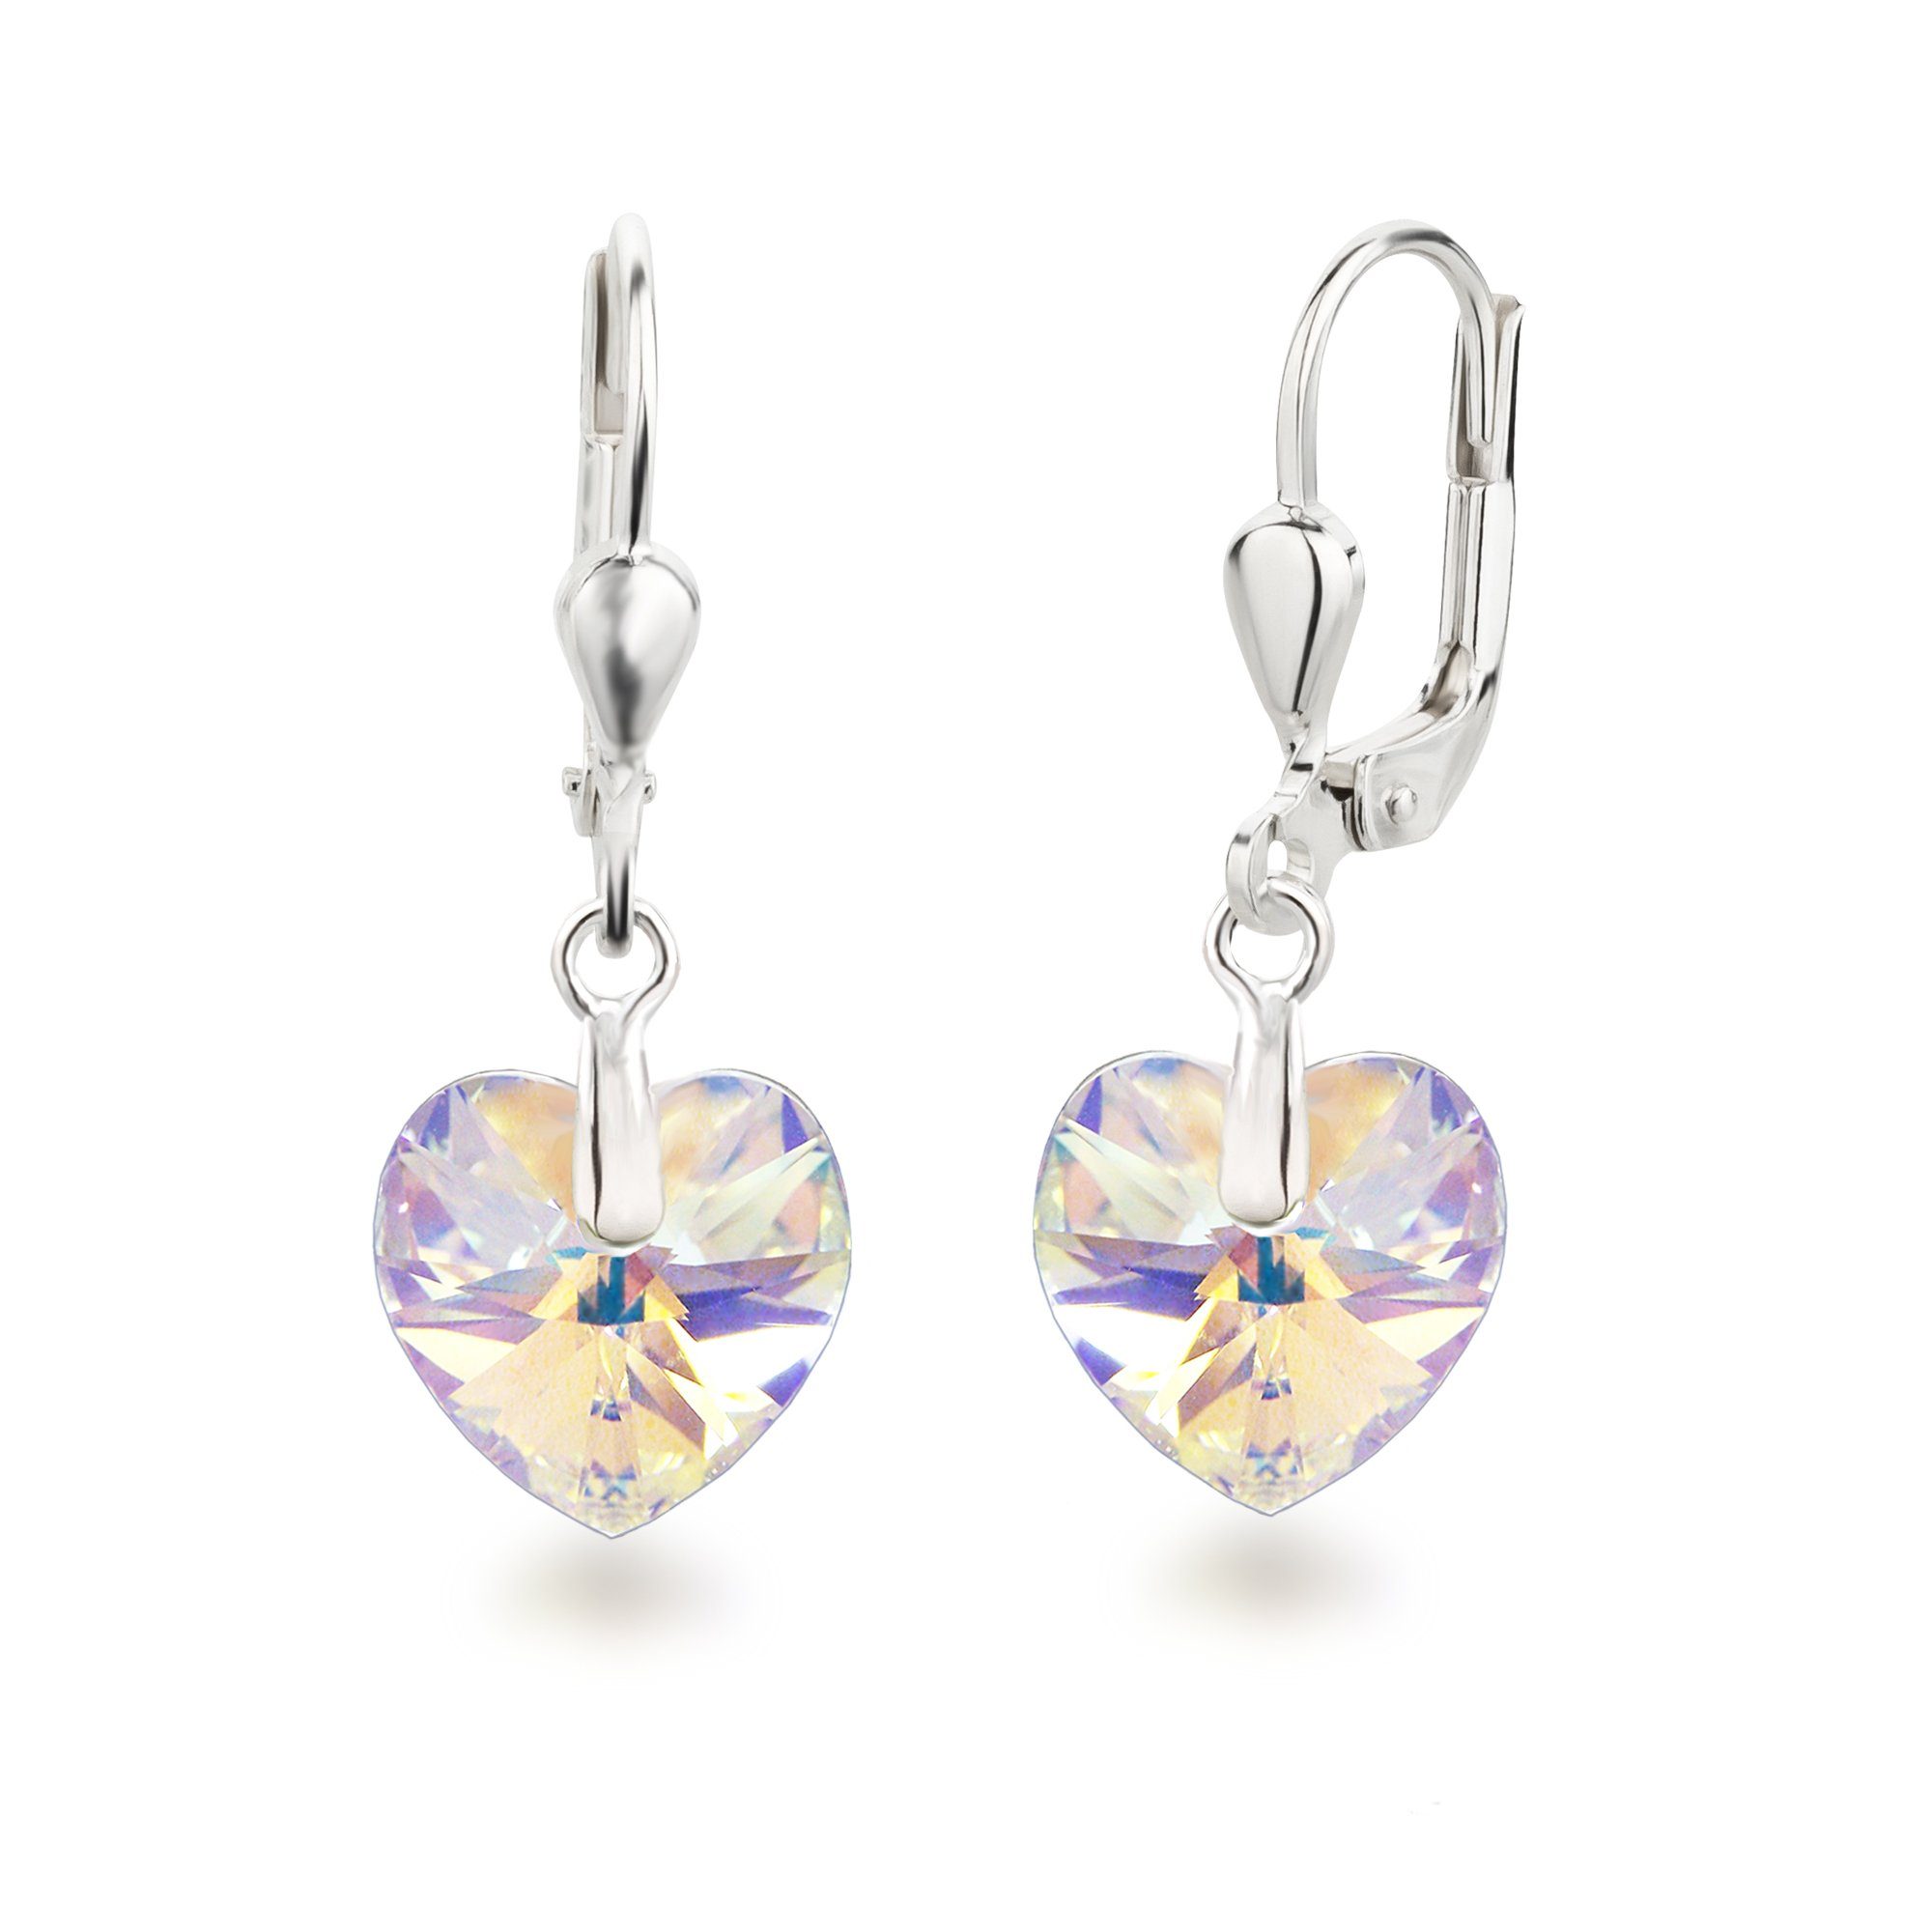 Schöner-SD Paar Ohrhänger Ohrringe hängend mit Herz Kristall 10mm für Damen und Mädchen, 925 Silber